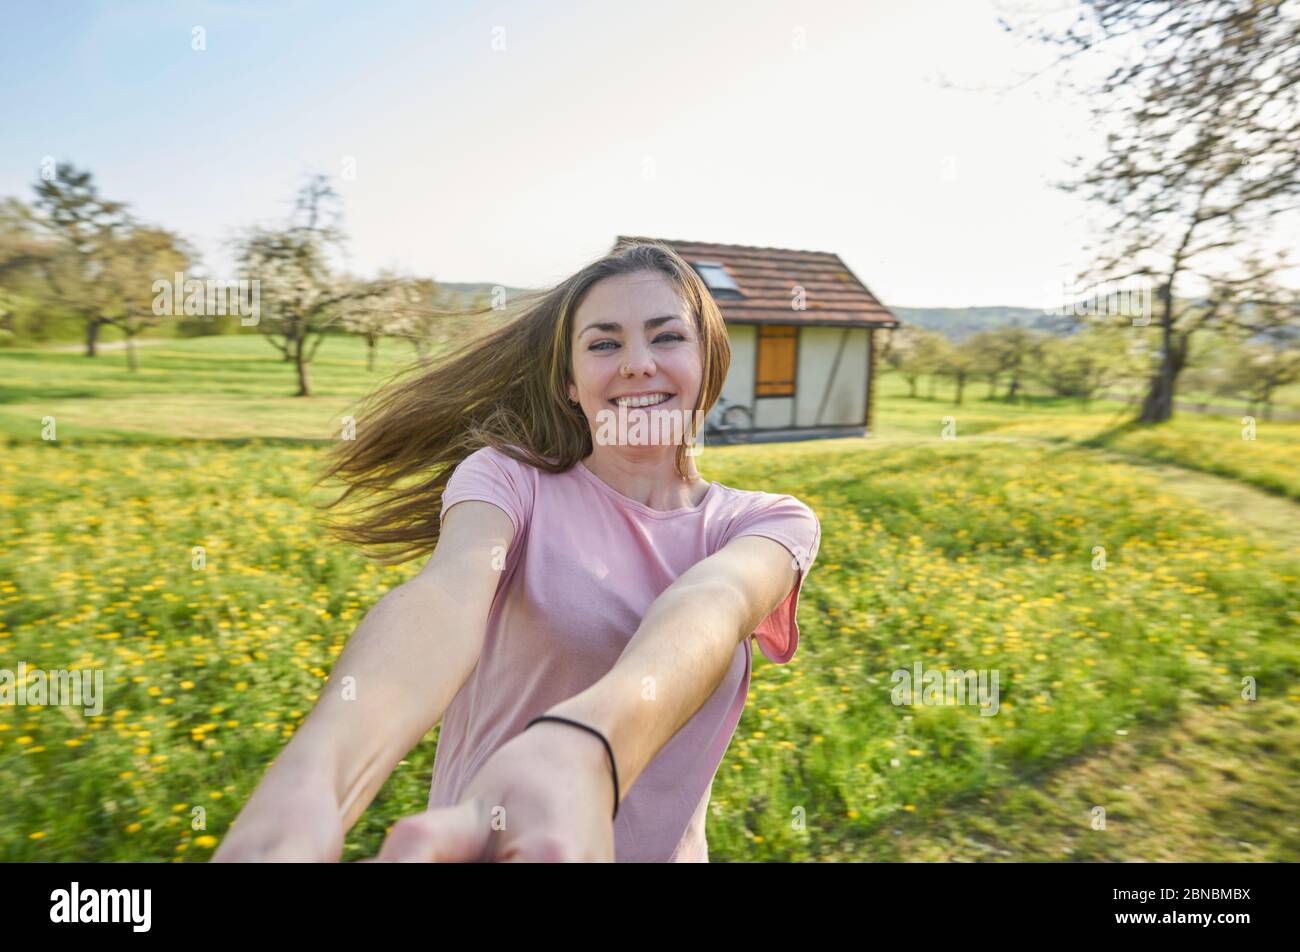 Junge glückliche Frau, tanzend auf dem deutschen Land im Hintergrund Wiesen, Bäume und ein Fachwerkhaus Stockfoto